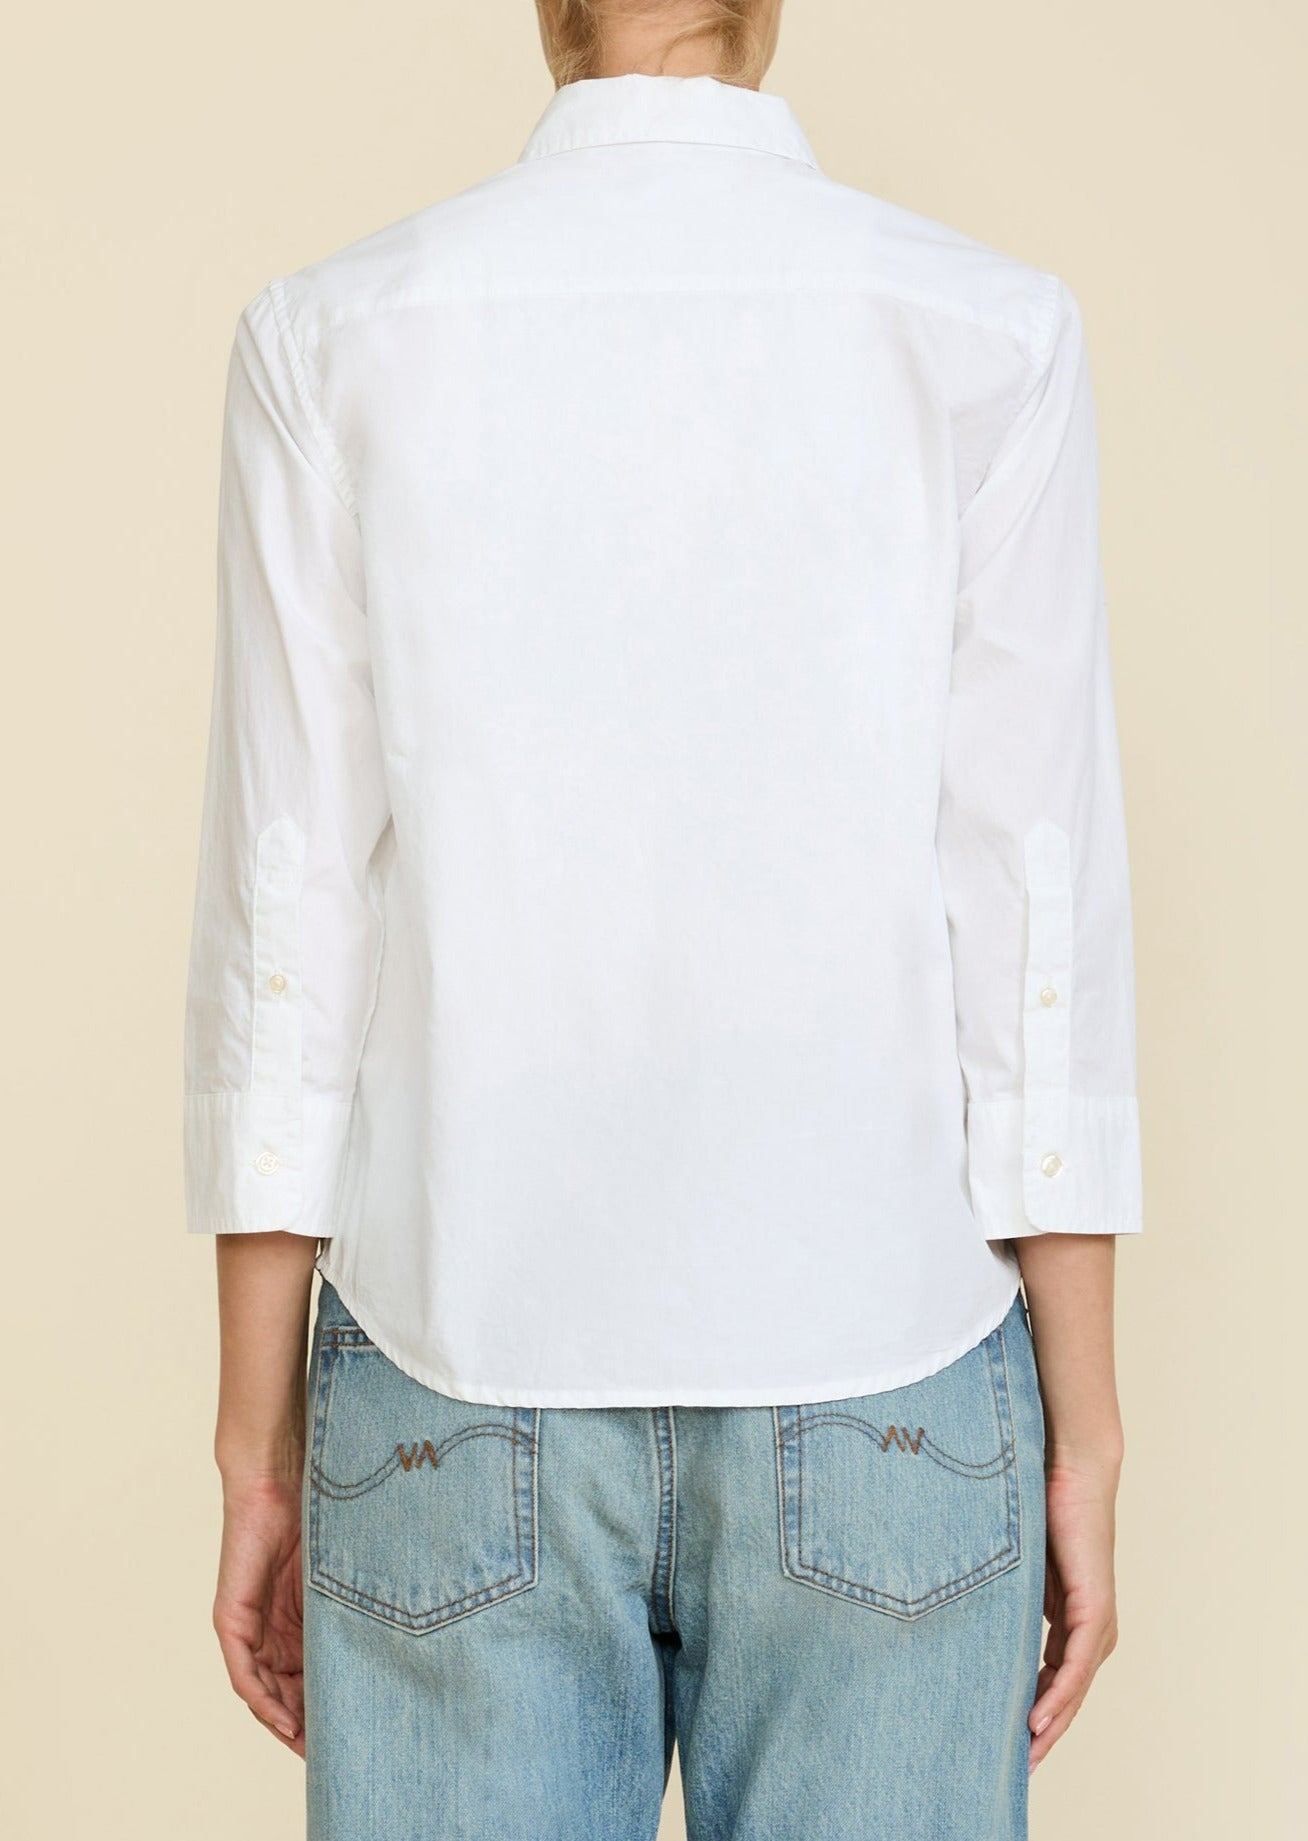 Adrienne Shrunken Shirt - White